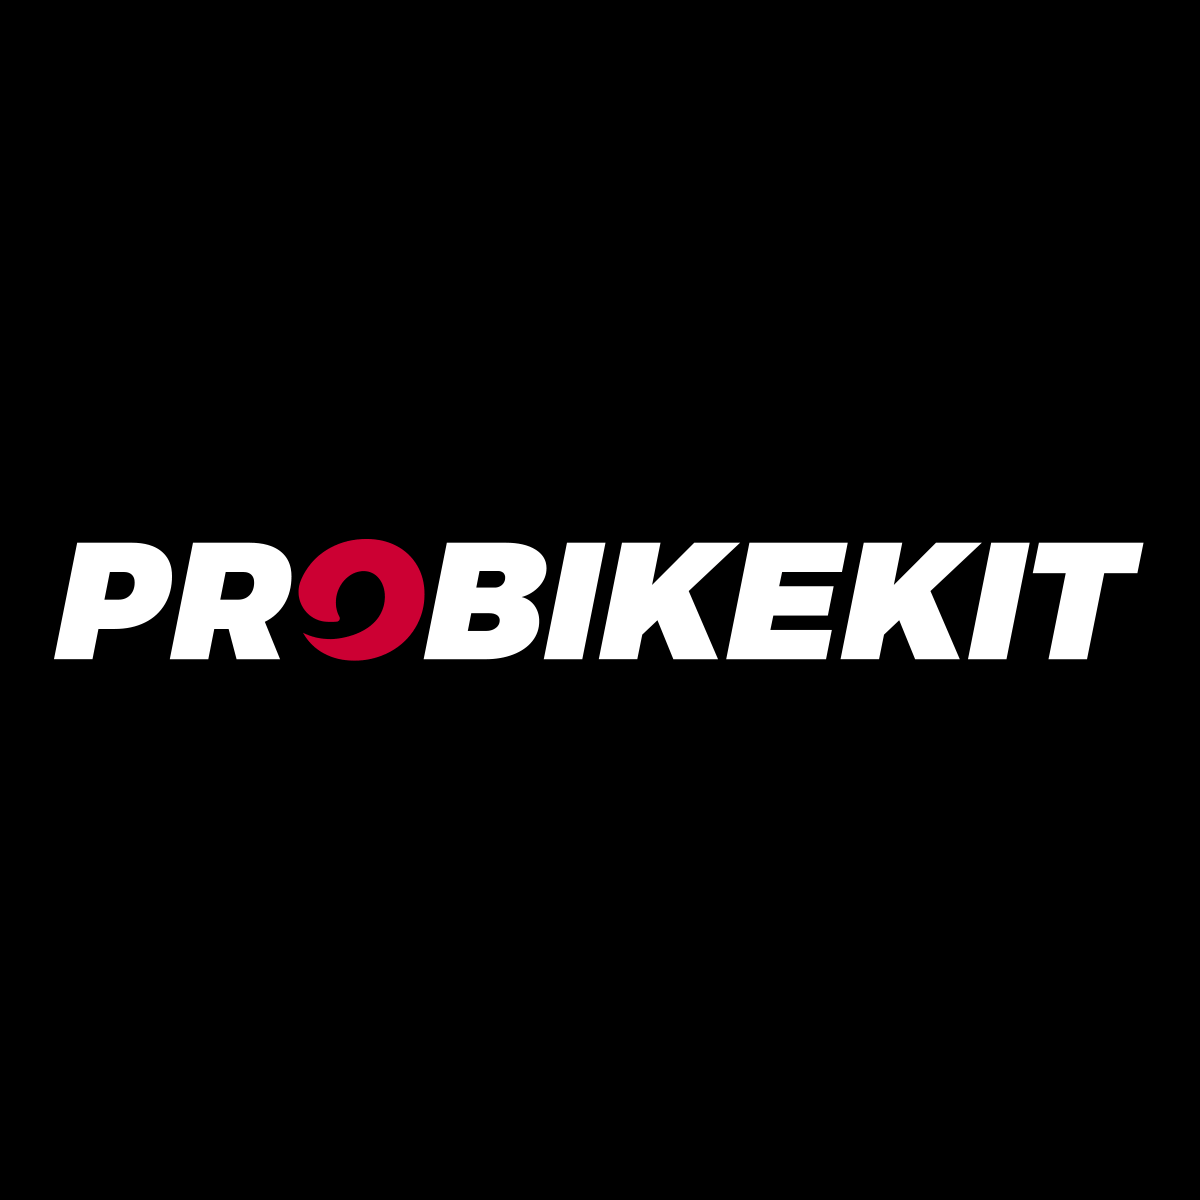 www.probikekit.co.uk